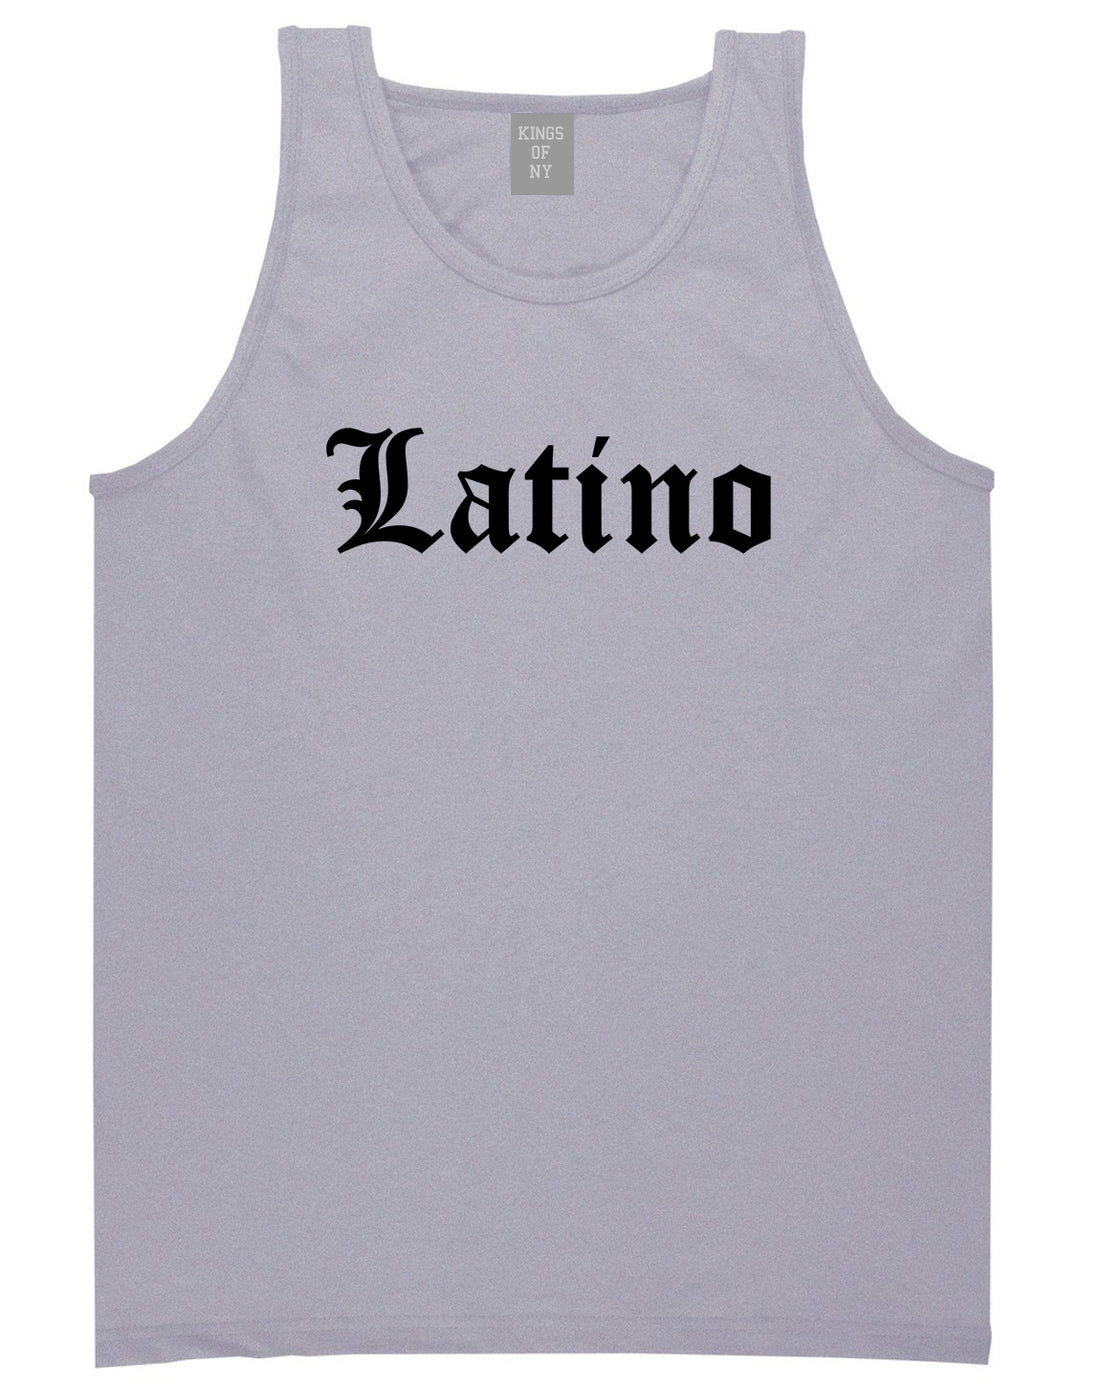 Latino Old English Spanish Mens Tank Top Shirt Grey by Kings Of NY